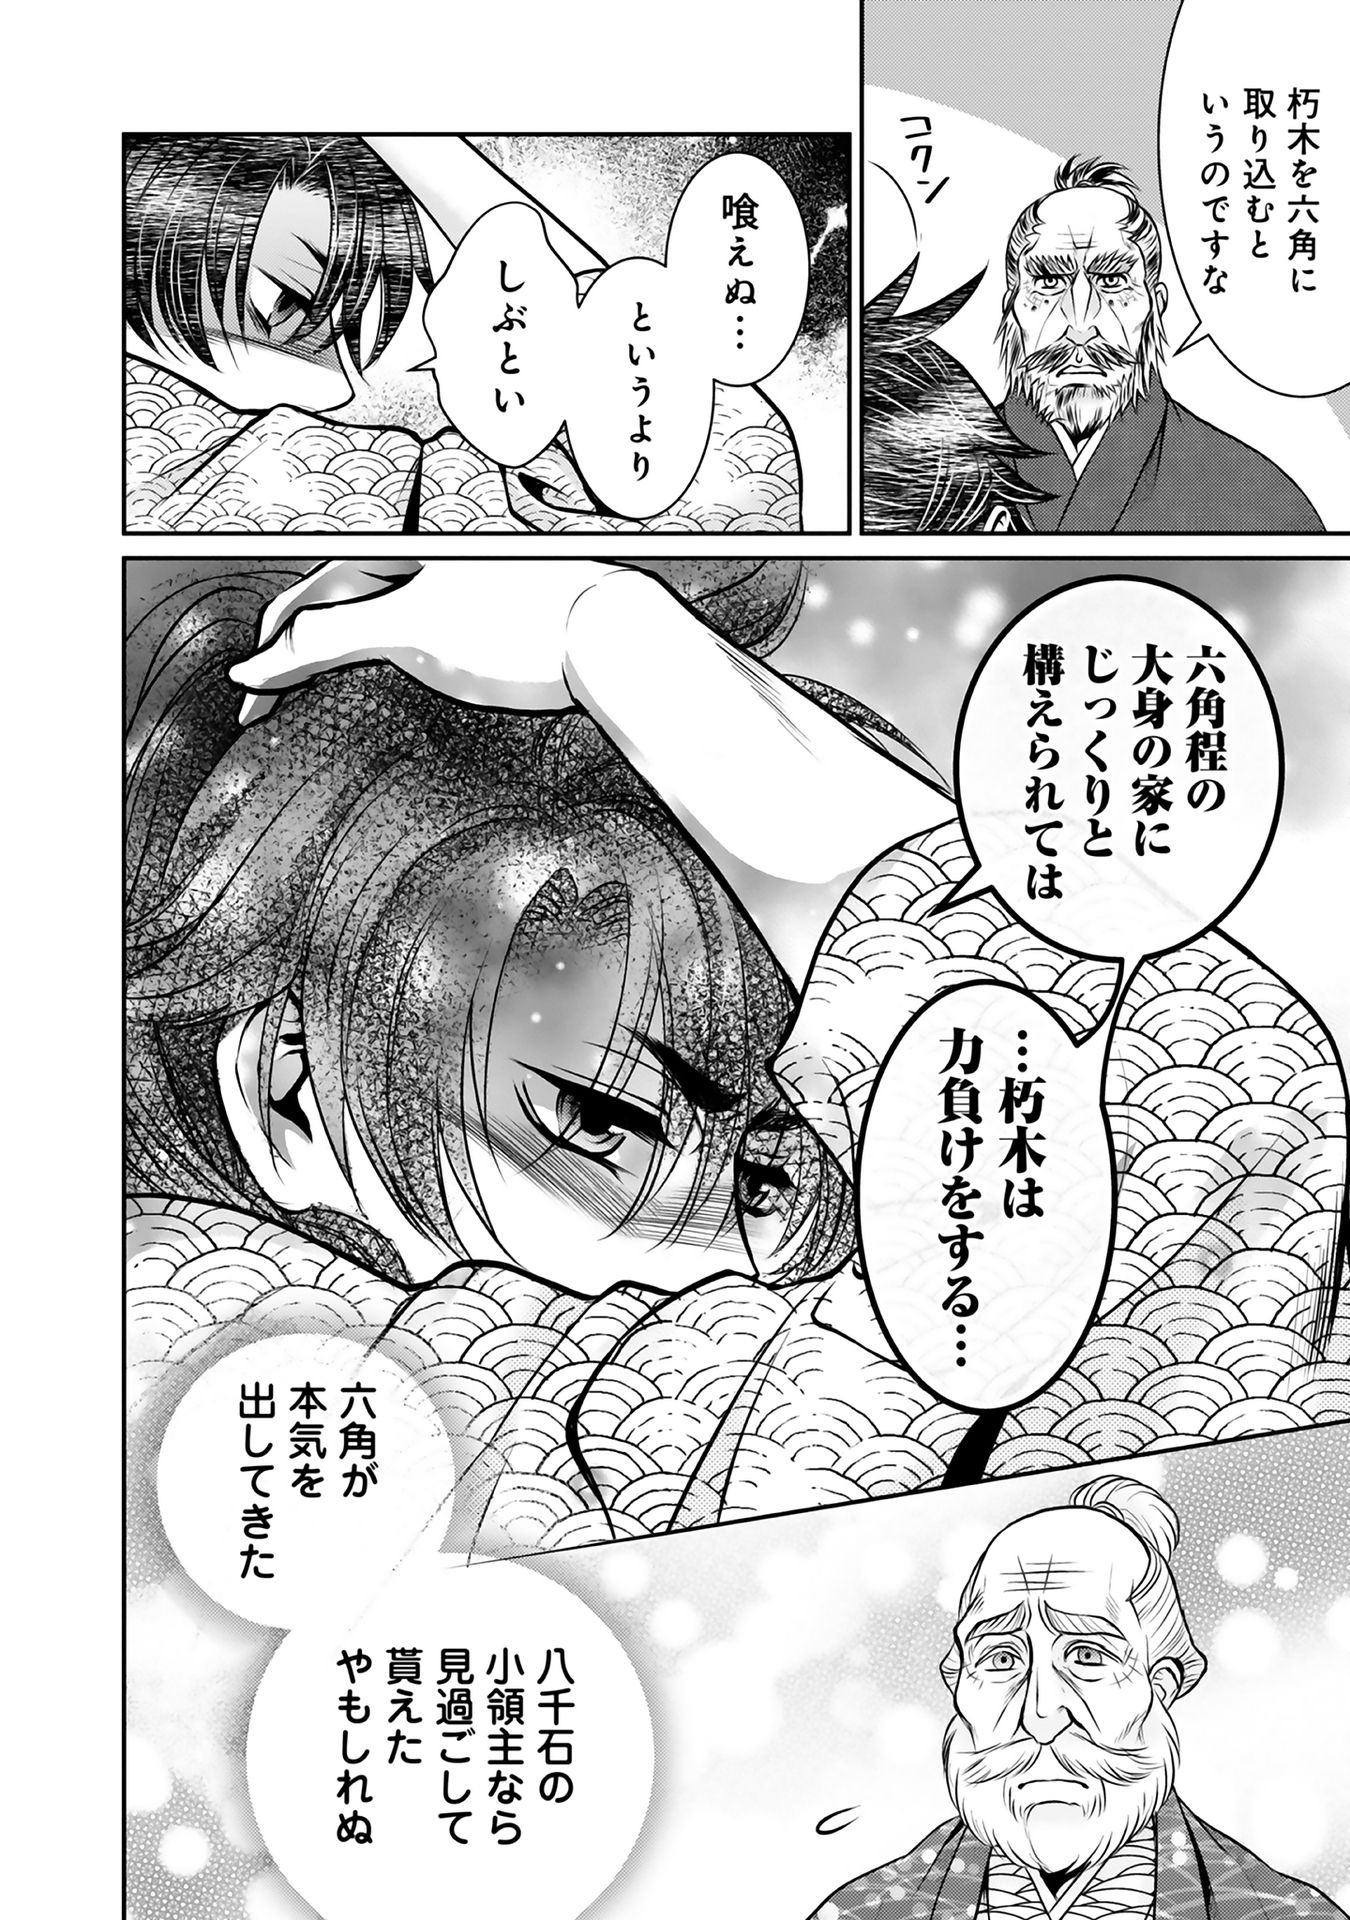 Afumi no Umi – Minamo ga Yureru Toki - Chapter 9 - Page 28